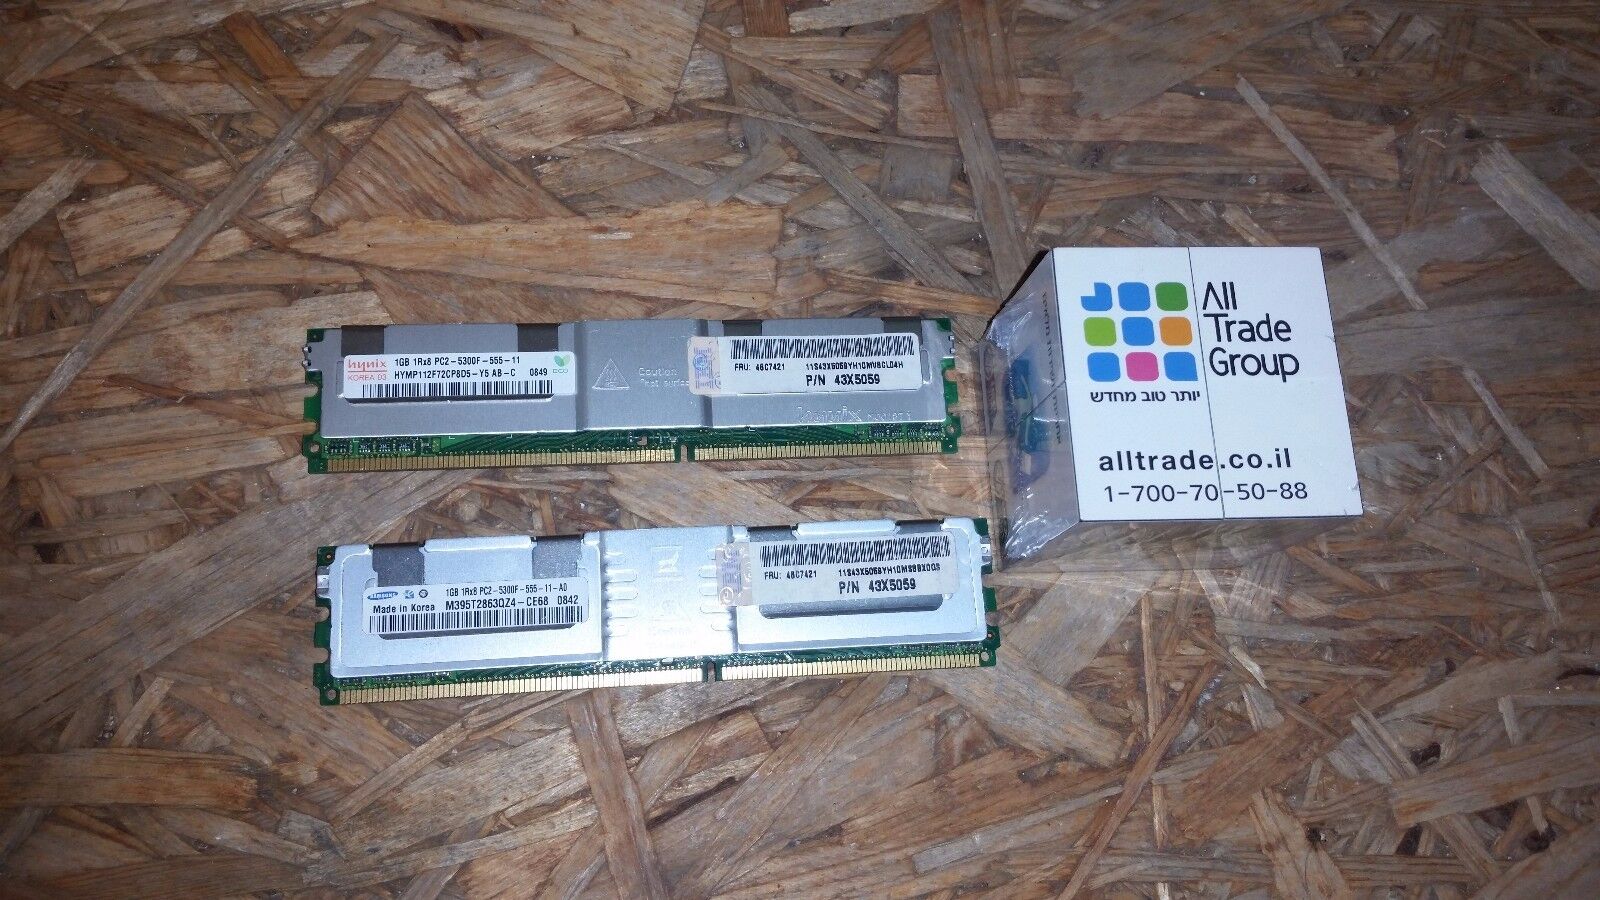 lot of 10 * IBM 43X5059  46C7421 1GB DIMM 240- DDR2 SDRAM 